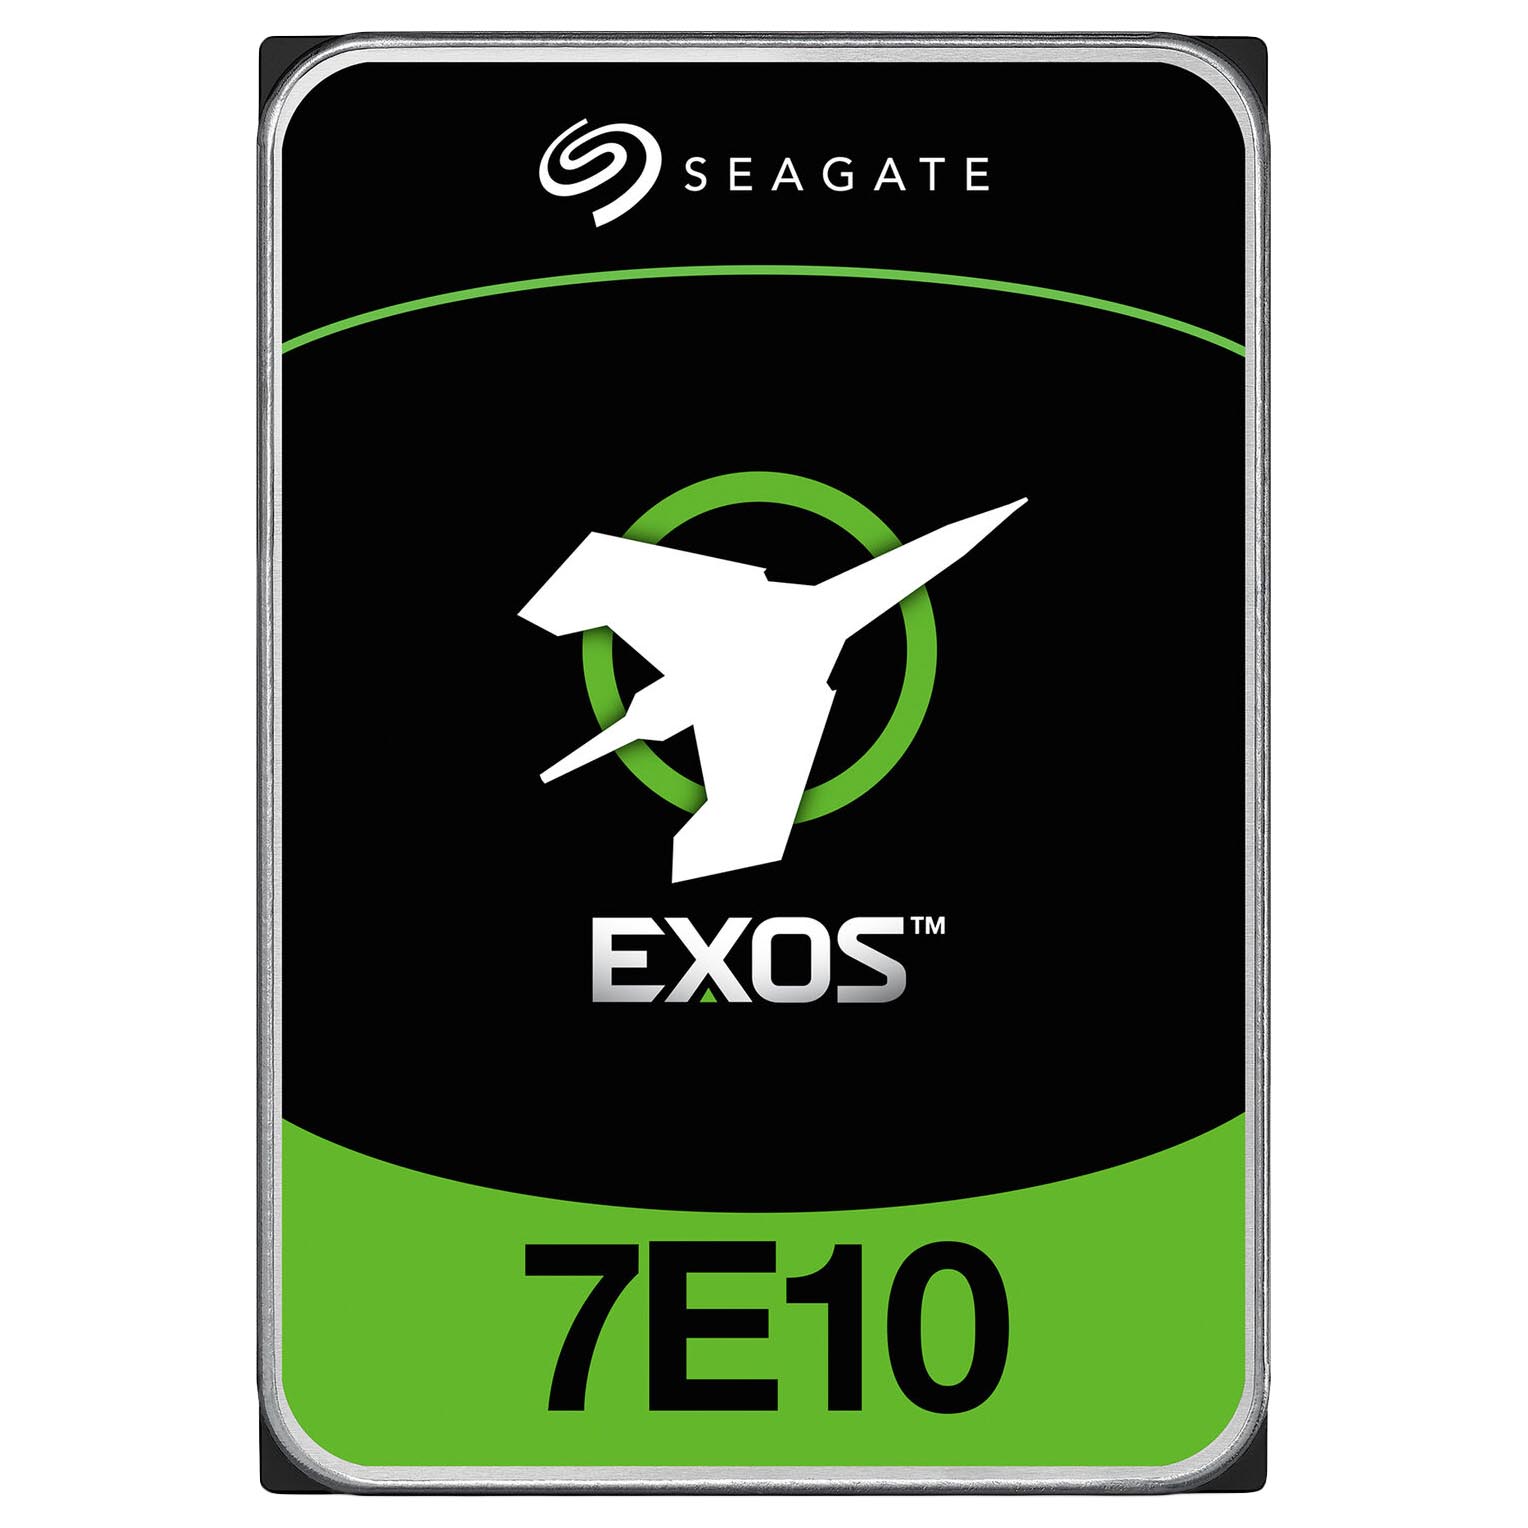 Внутренний жесткий диск Seagate Exos 7E10, ST8000NM018B, 8 Тб для серверов seagate жесткий диск seagate st2000nm0045 2tb 7200 sas 3 5 hdd